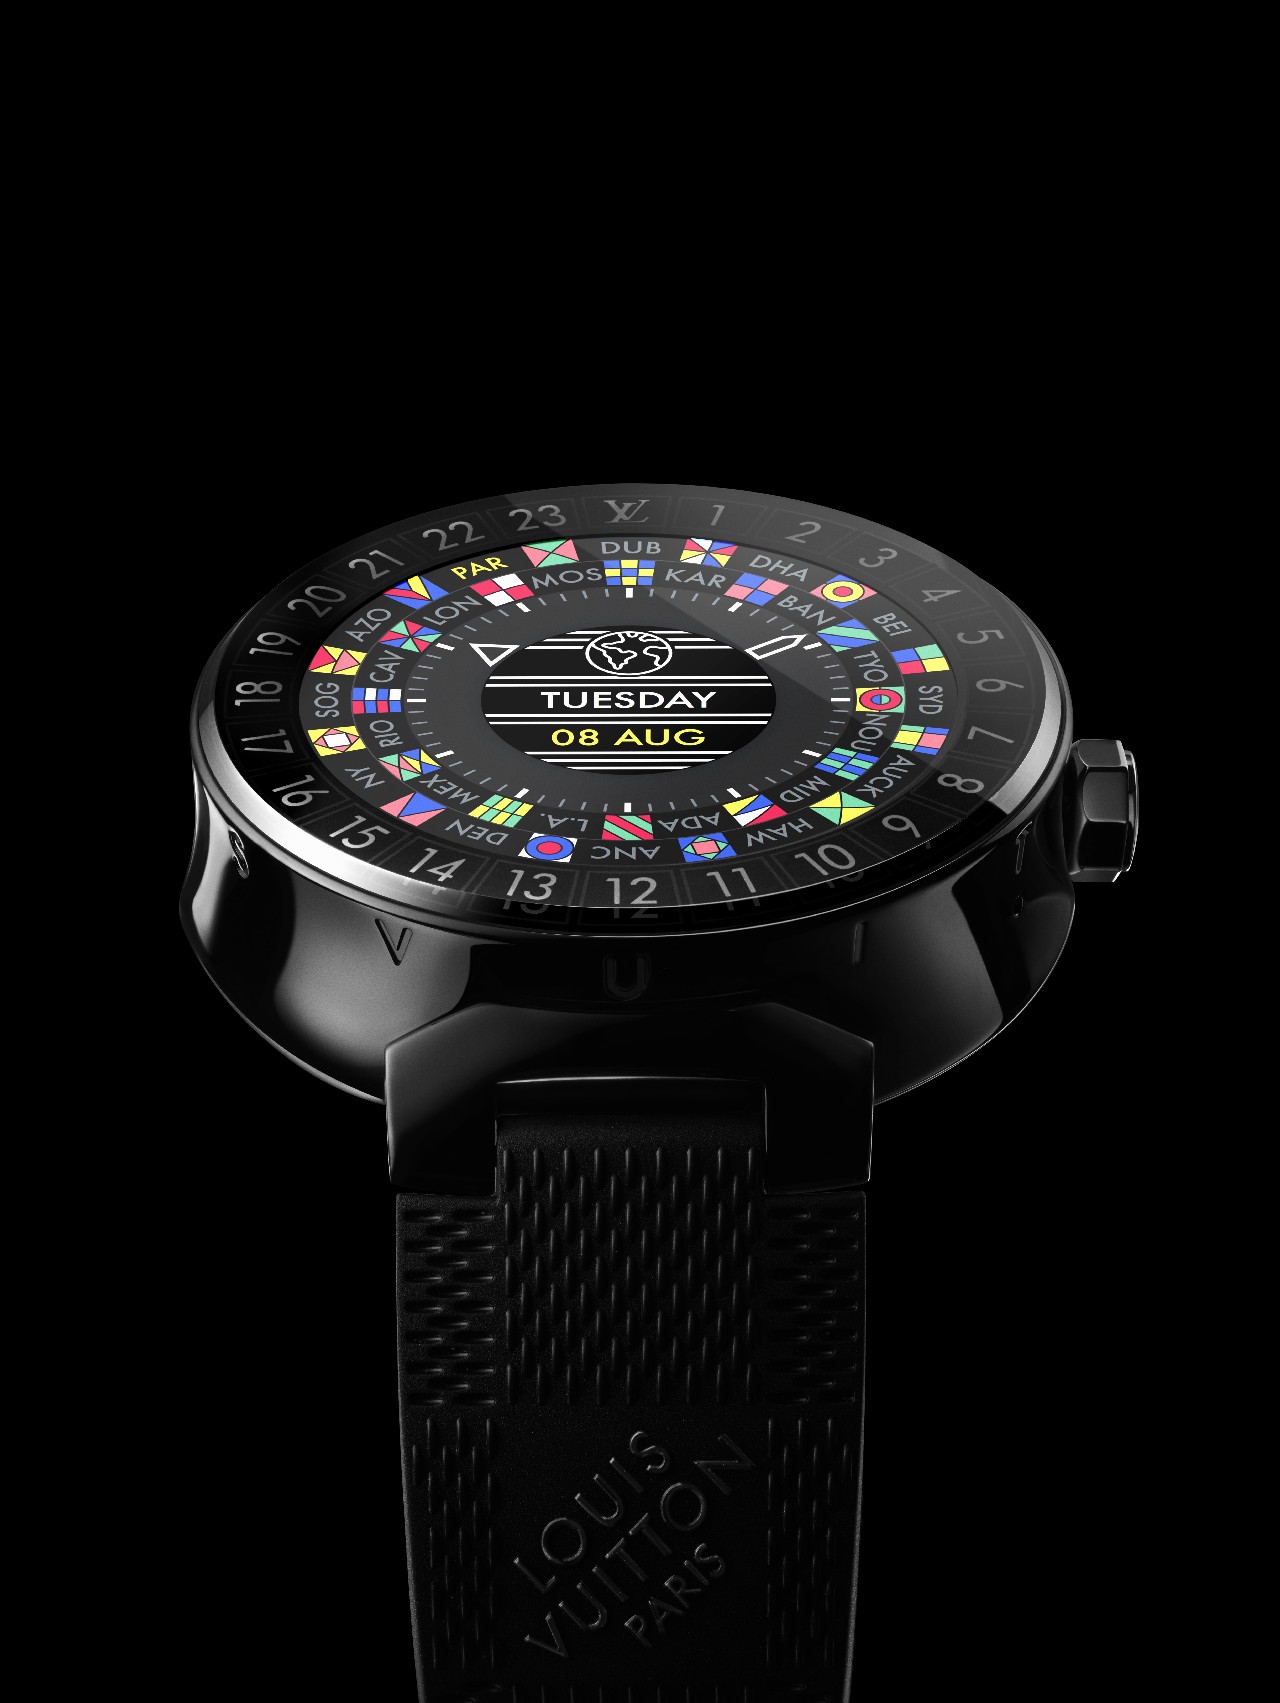 Louis Vuitton orologio Tambour Horizon: il primo connected watch della Maison, video e foto